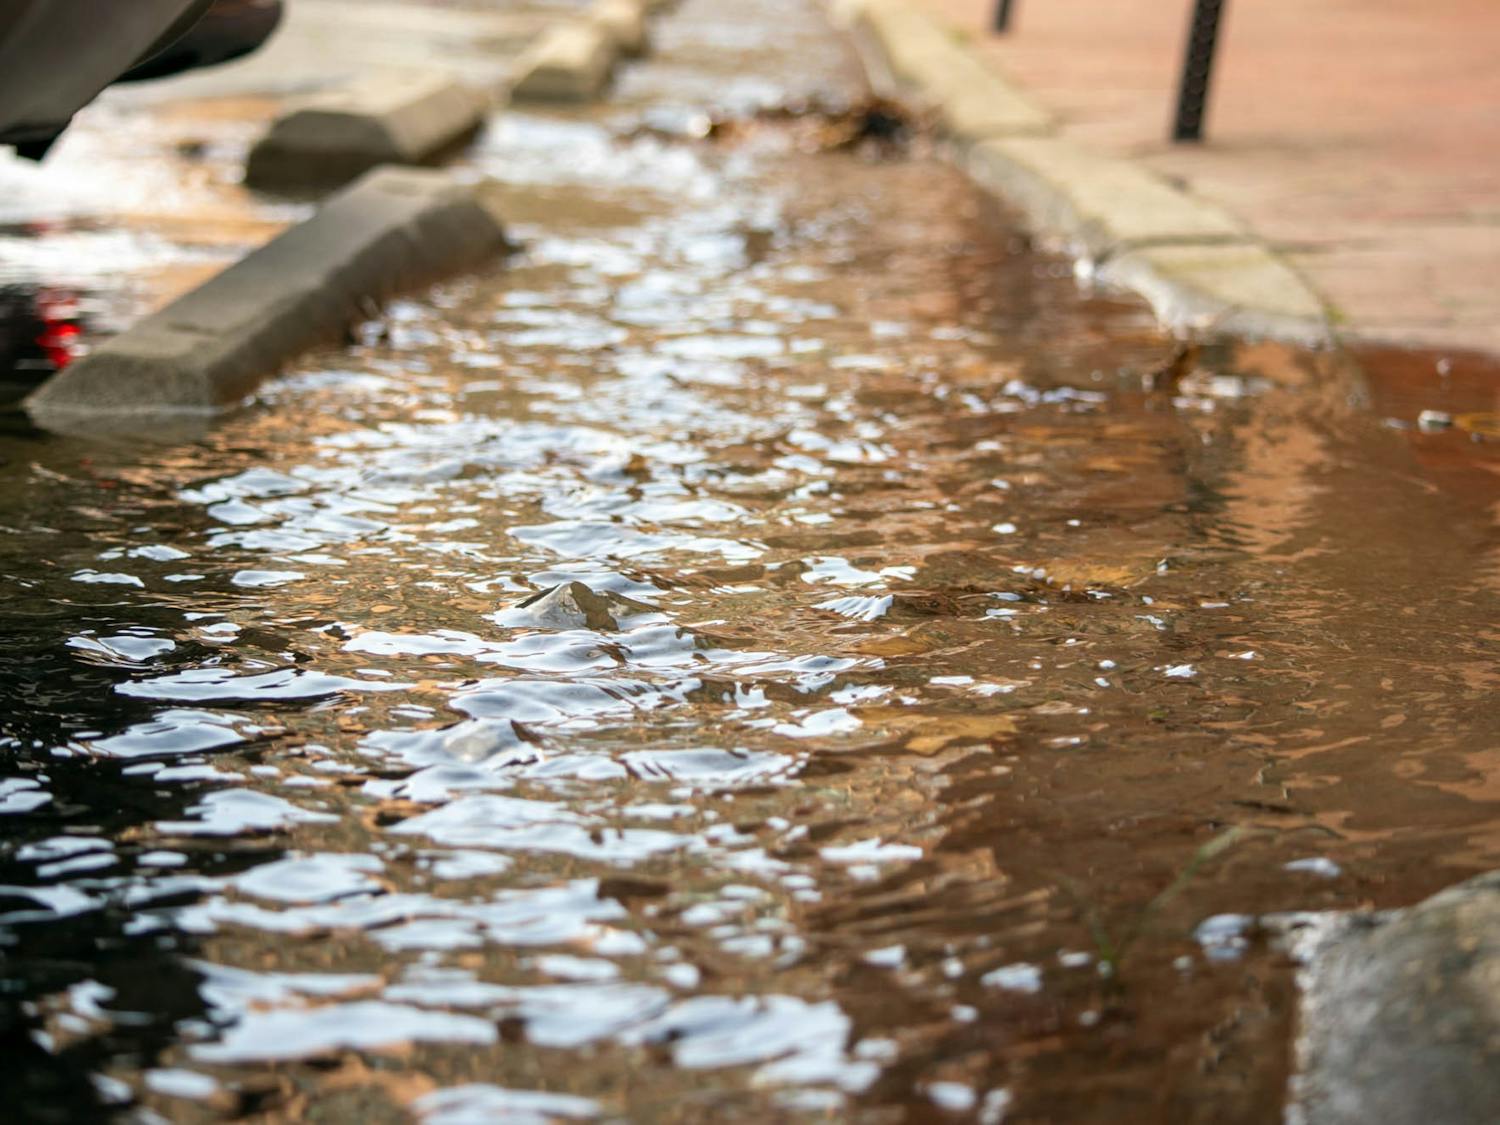 Water flows onto the sidewalk near UNC's Carrington Hall on Thursday, Feb. 23, 2023.